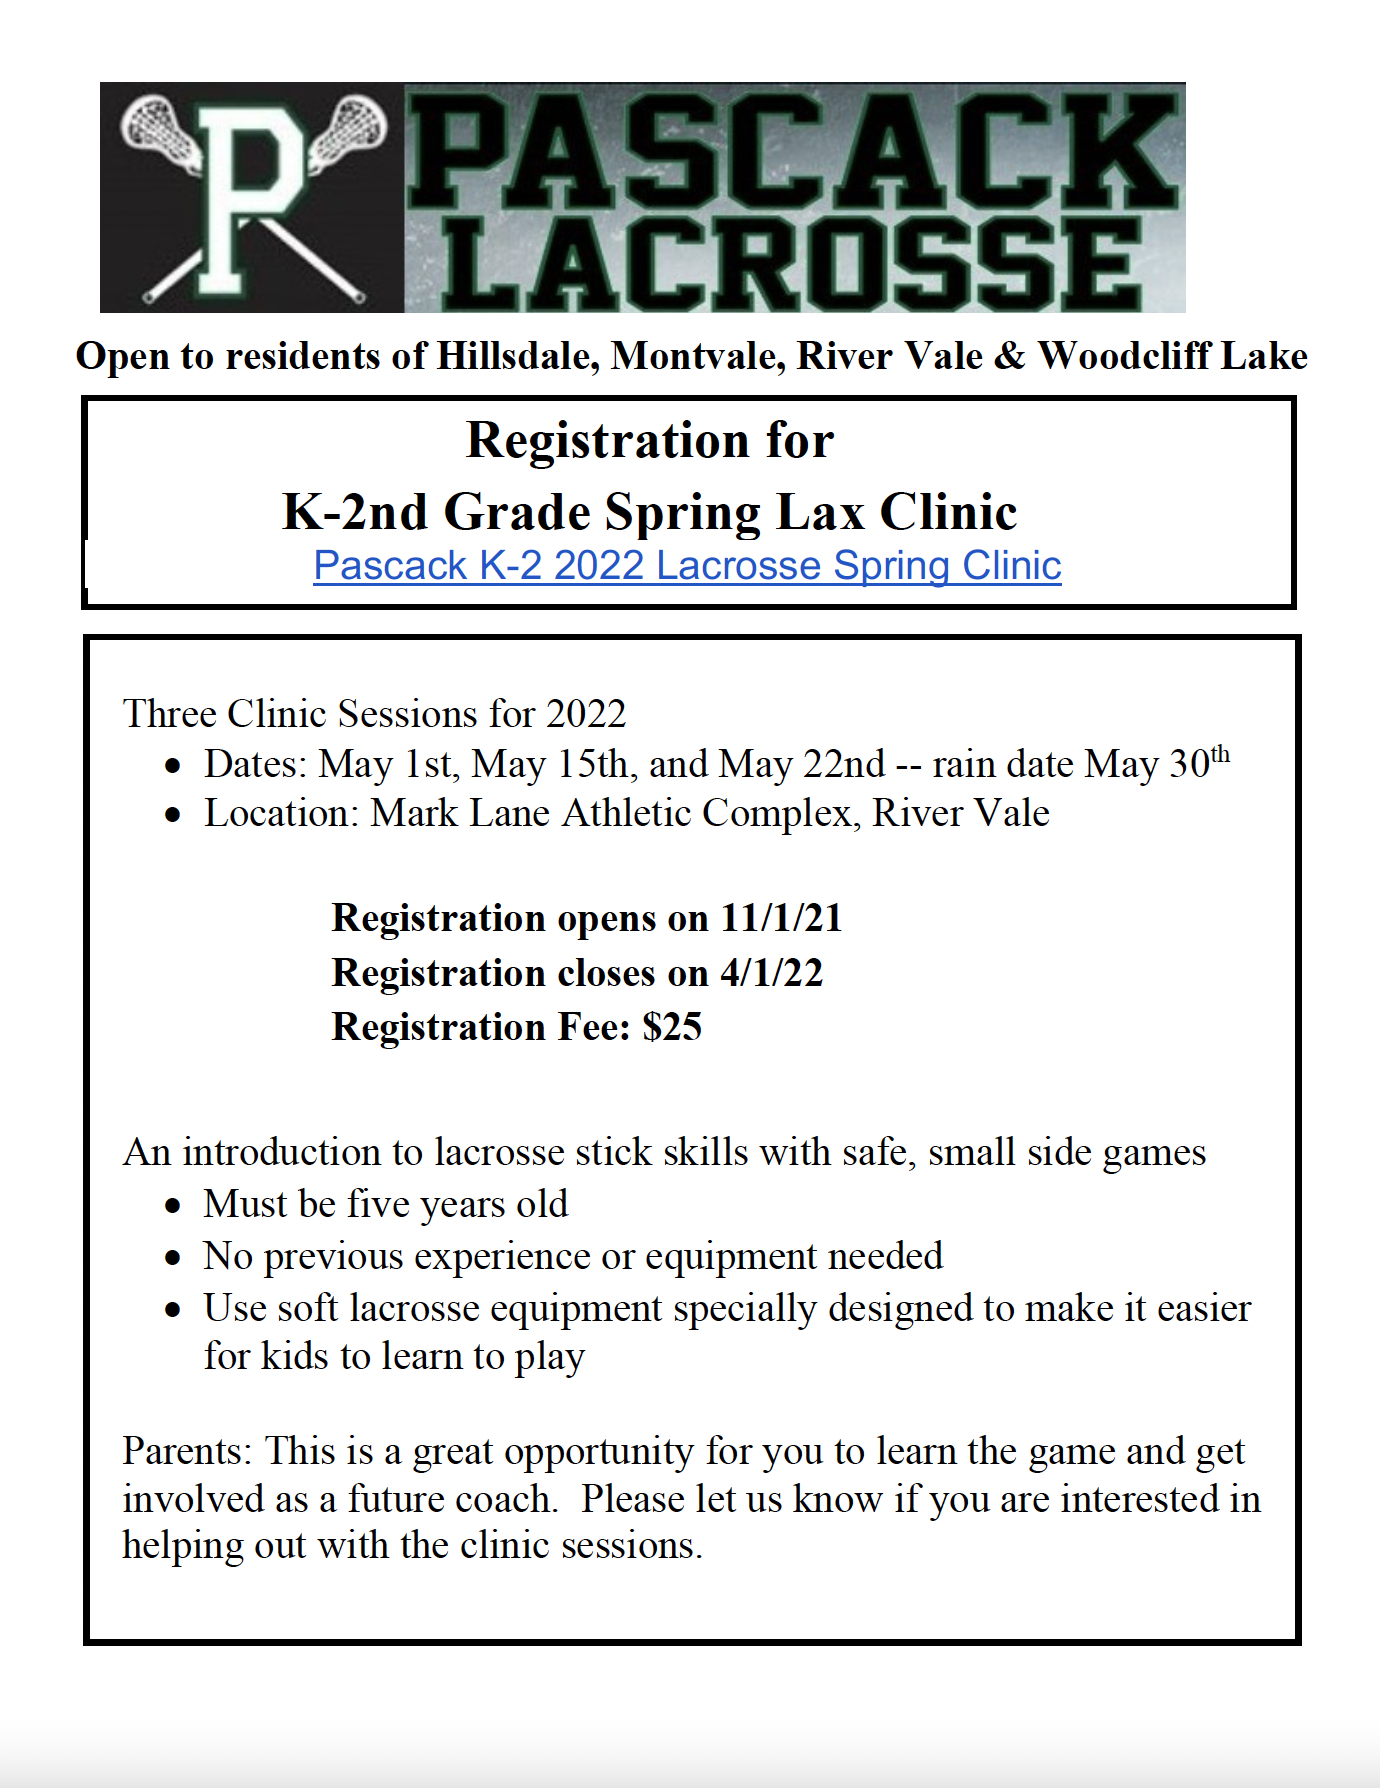 Lacrosse Clinic Flyer